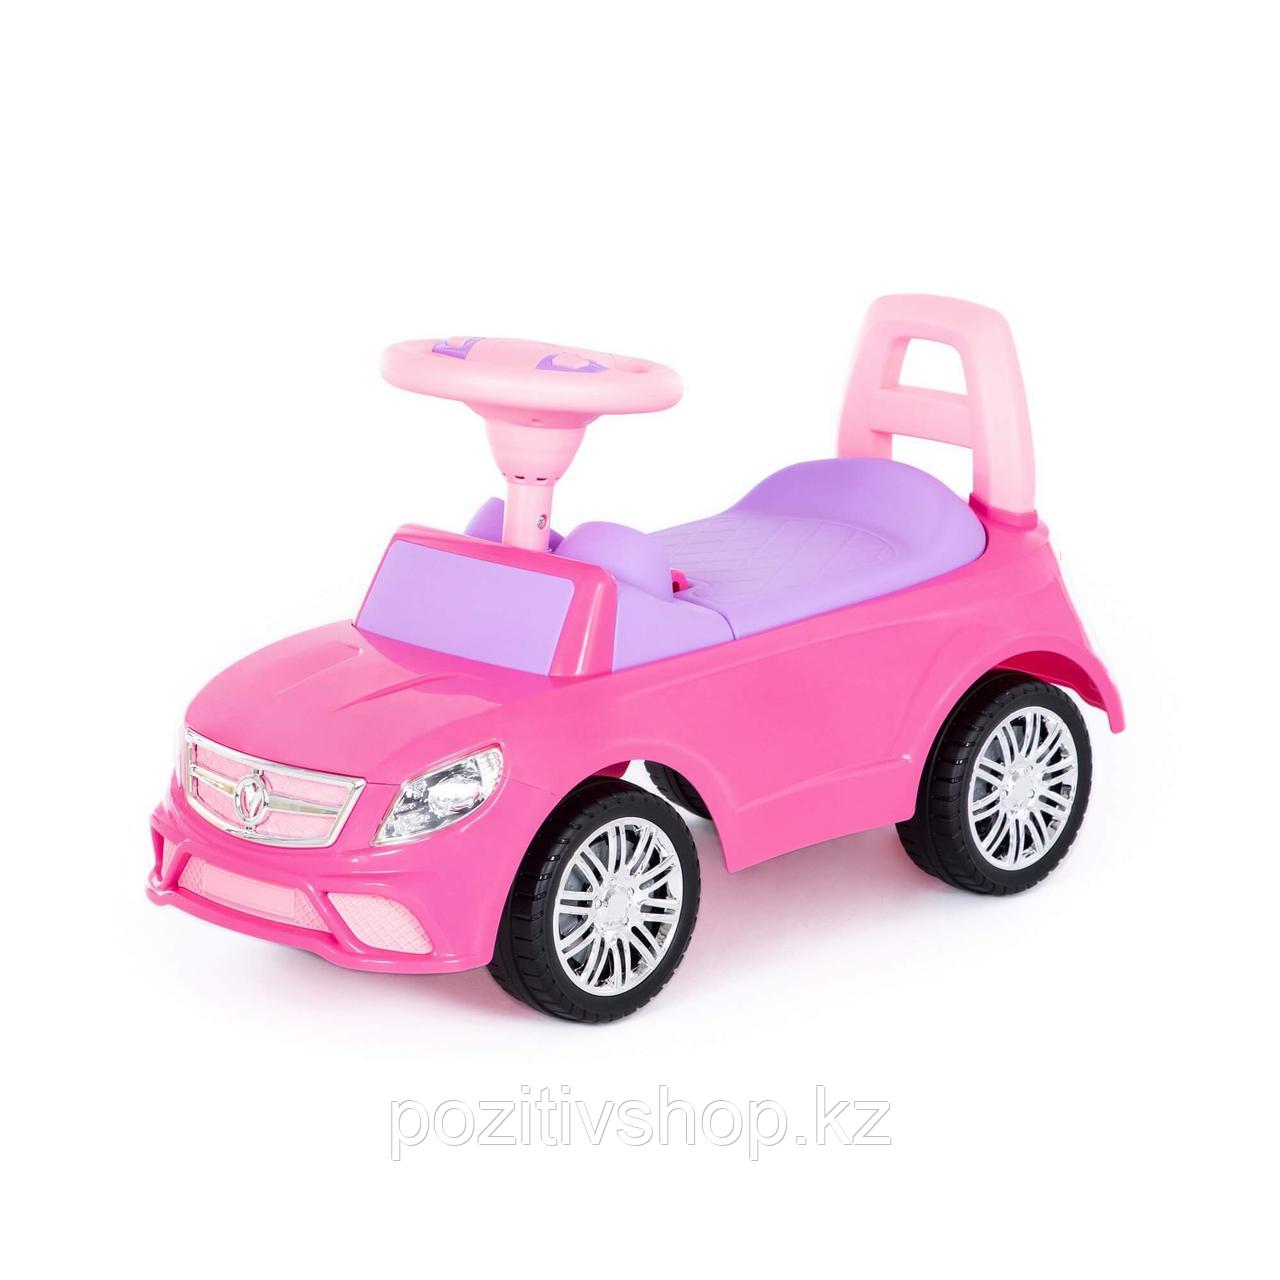 Детская машинка толокар Полесье SuperCar №3 розовый